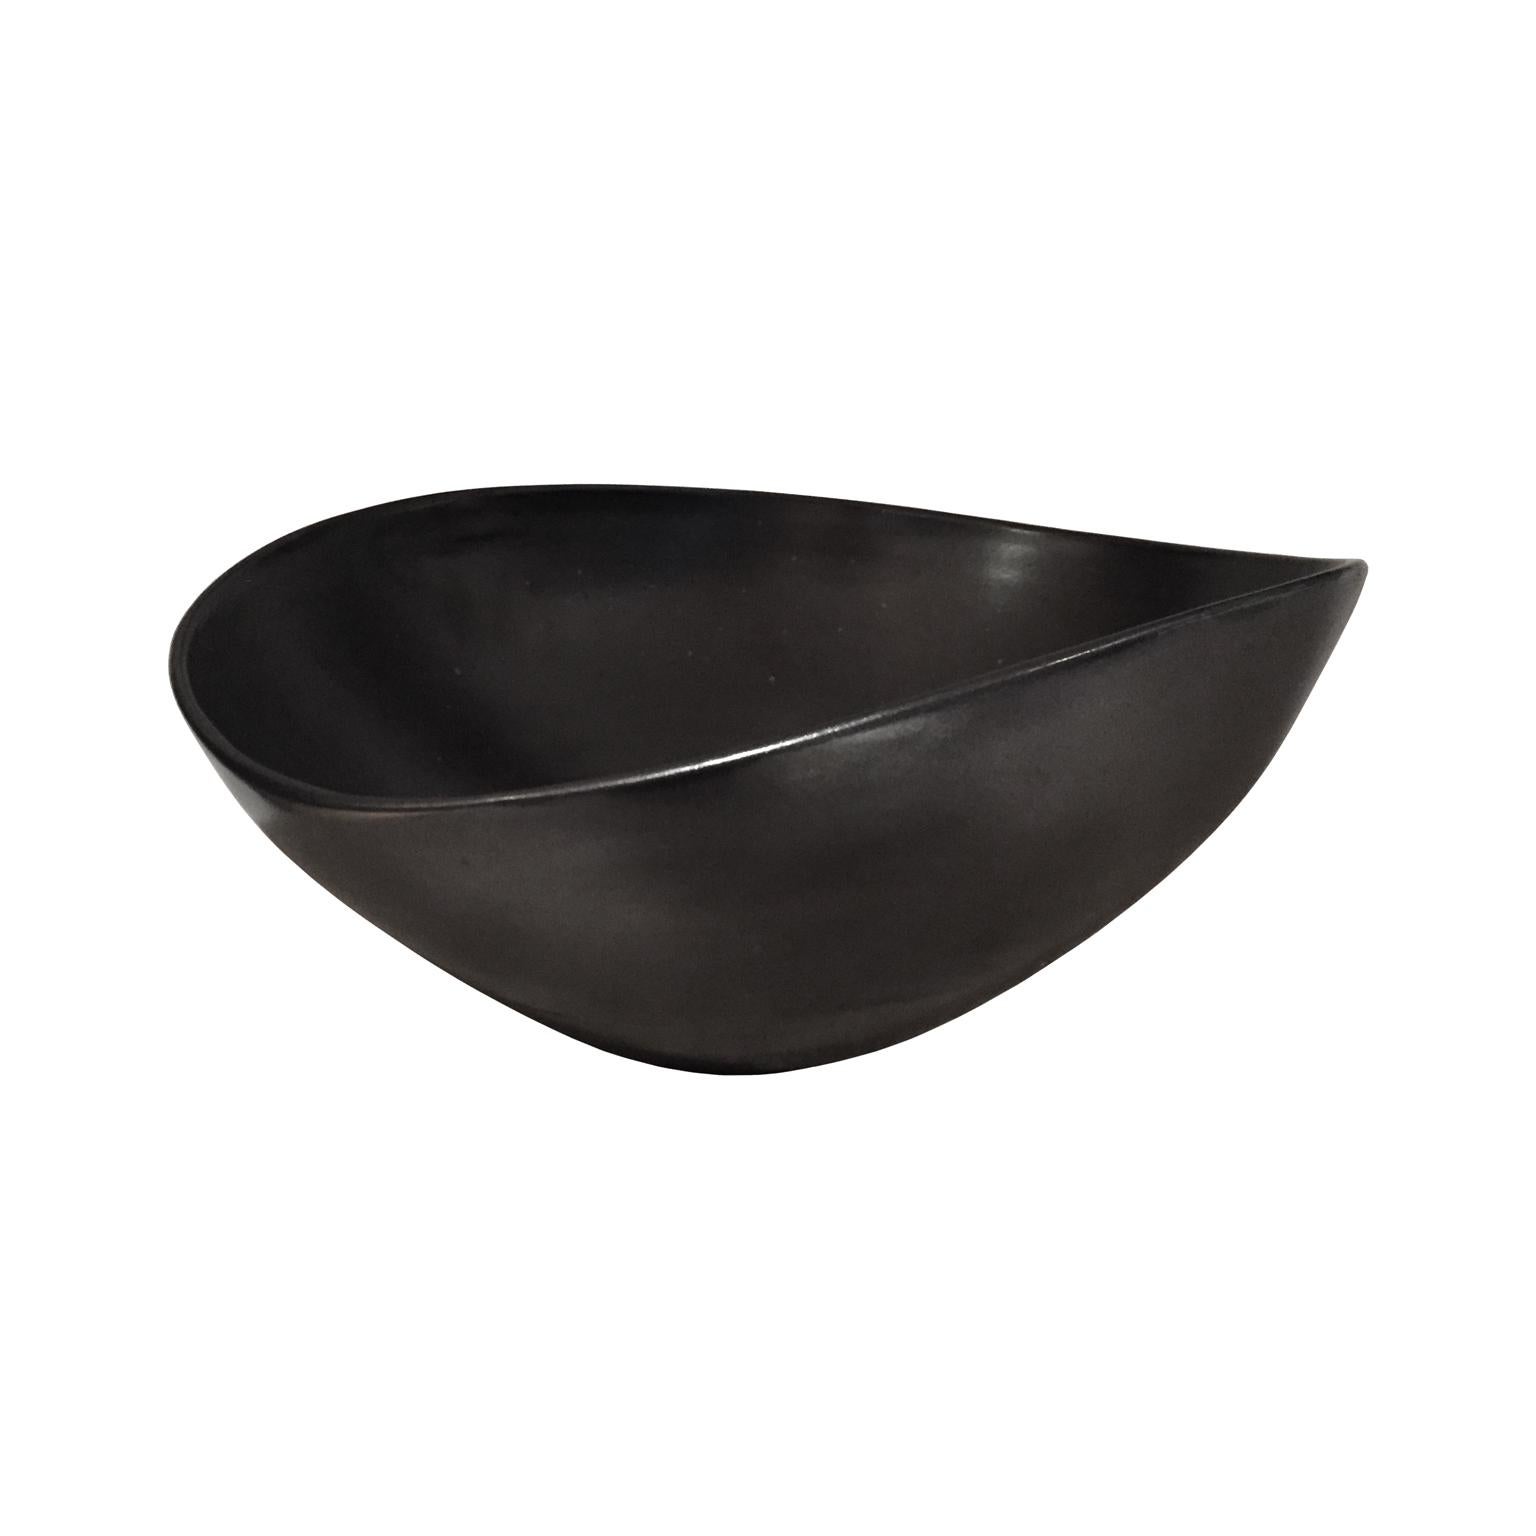 Large Asymmetrical Black Glaze Ceramic Bowl by Sandi Fellman